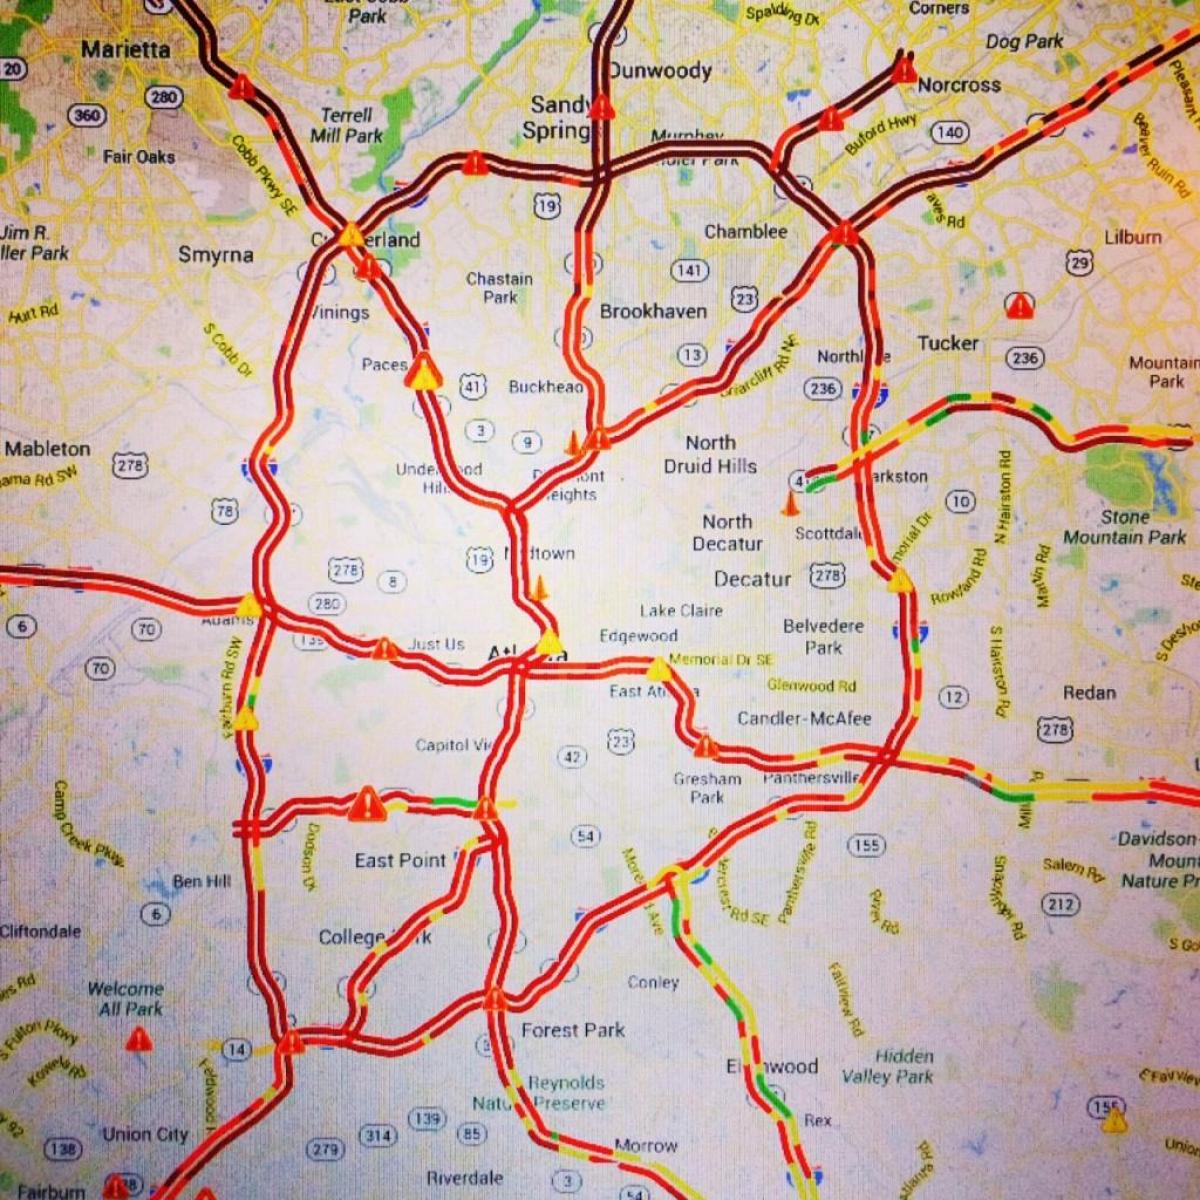 Karte von Atlanta-Verkehr